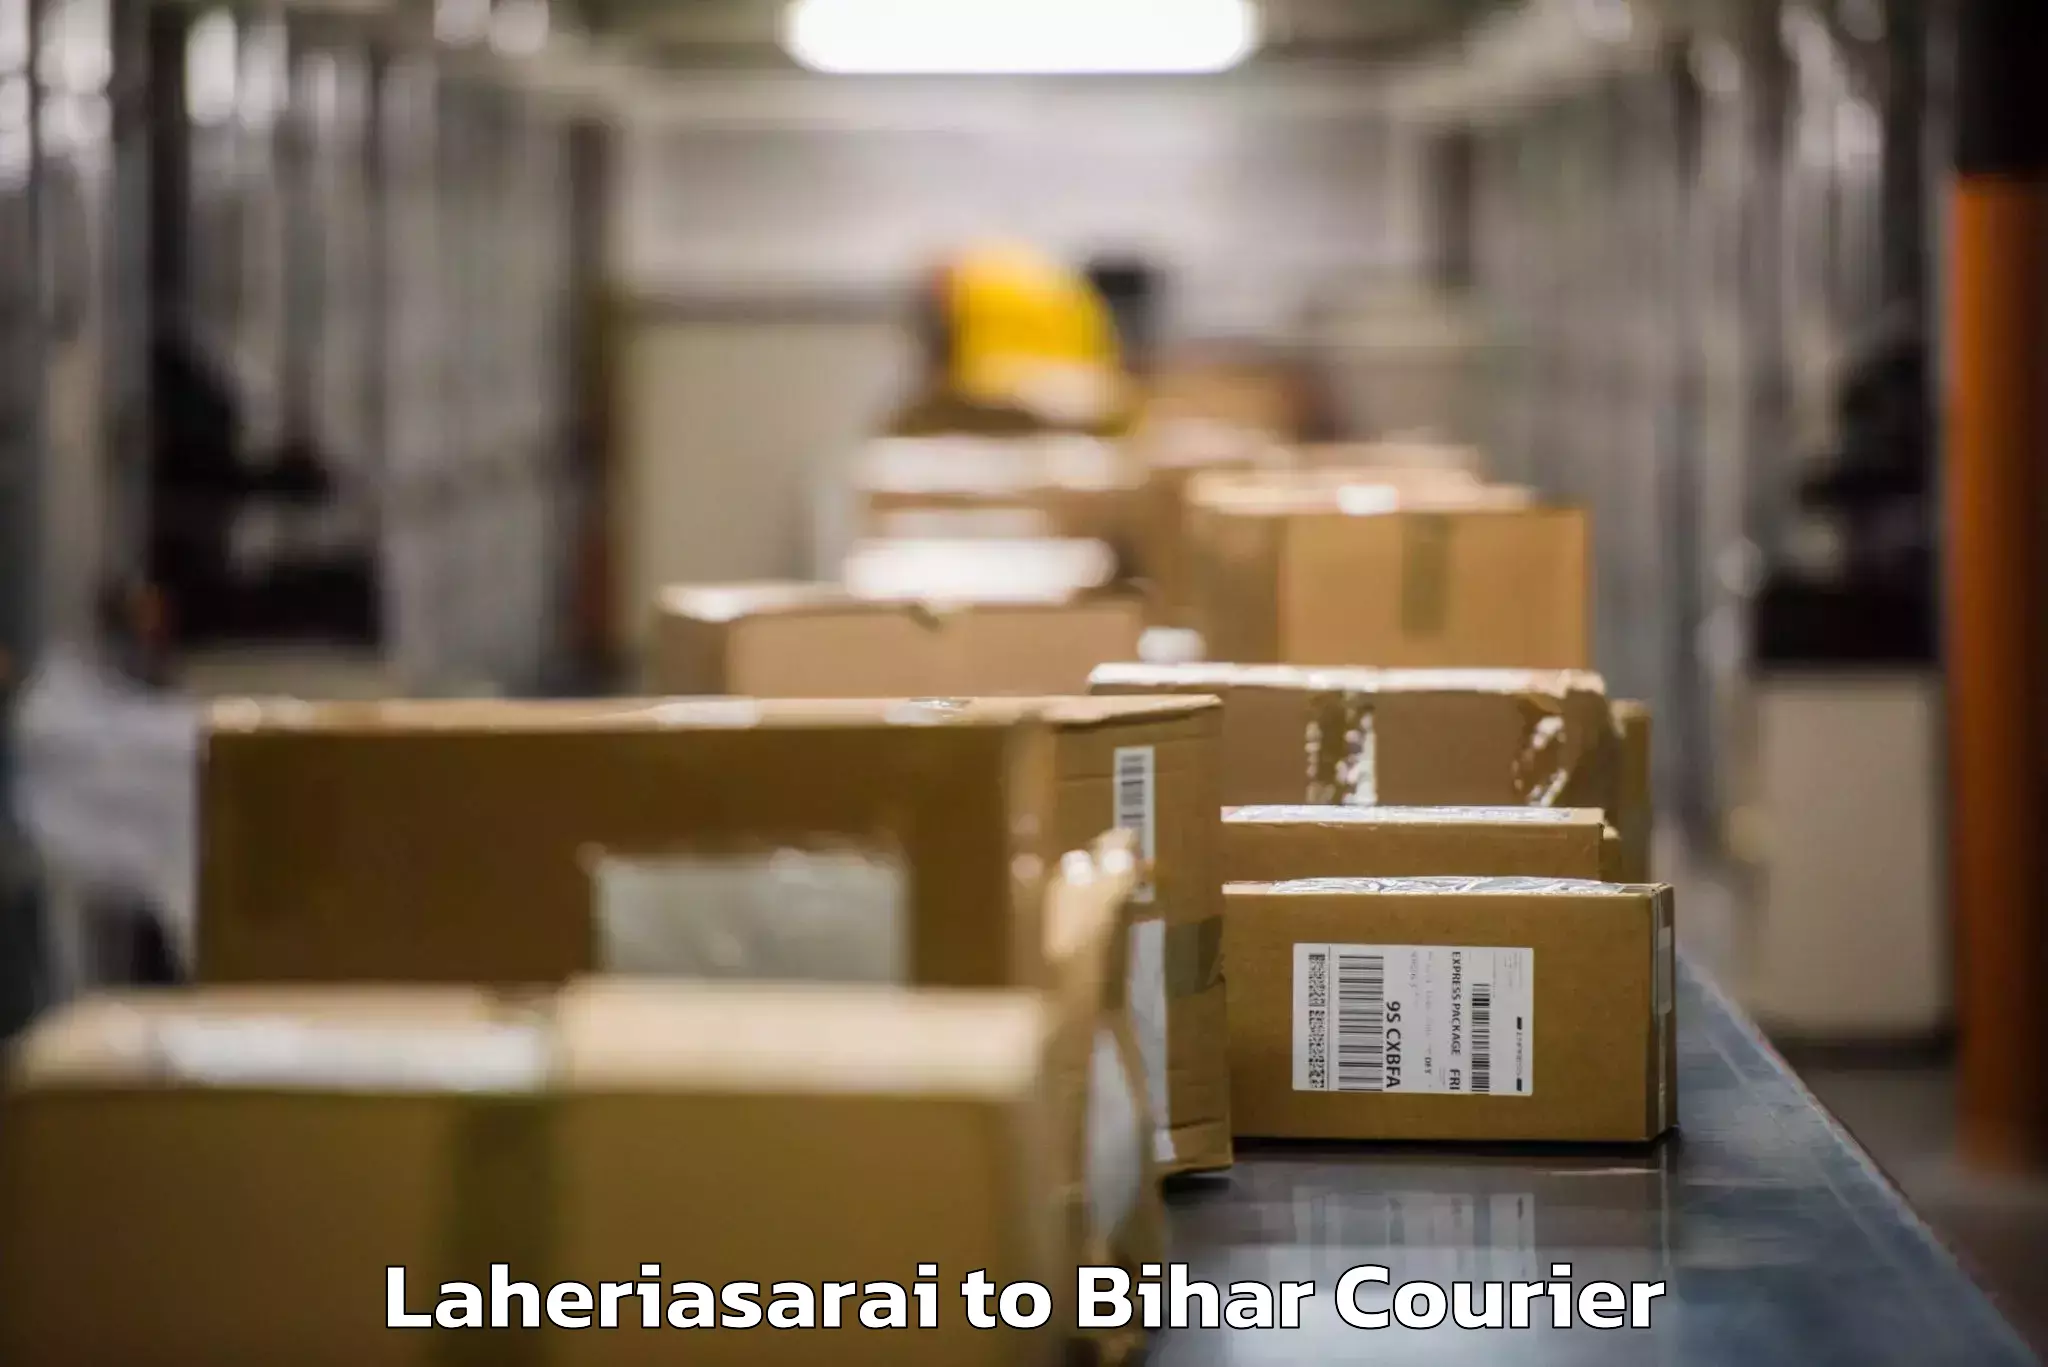 Luggage transport consulting Laheriasarai to Bihar